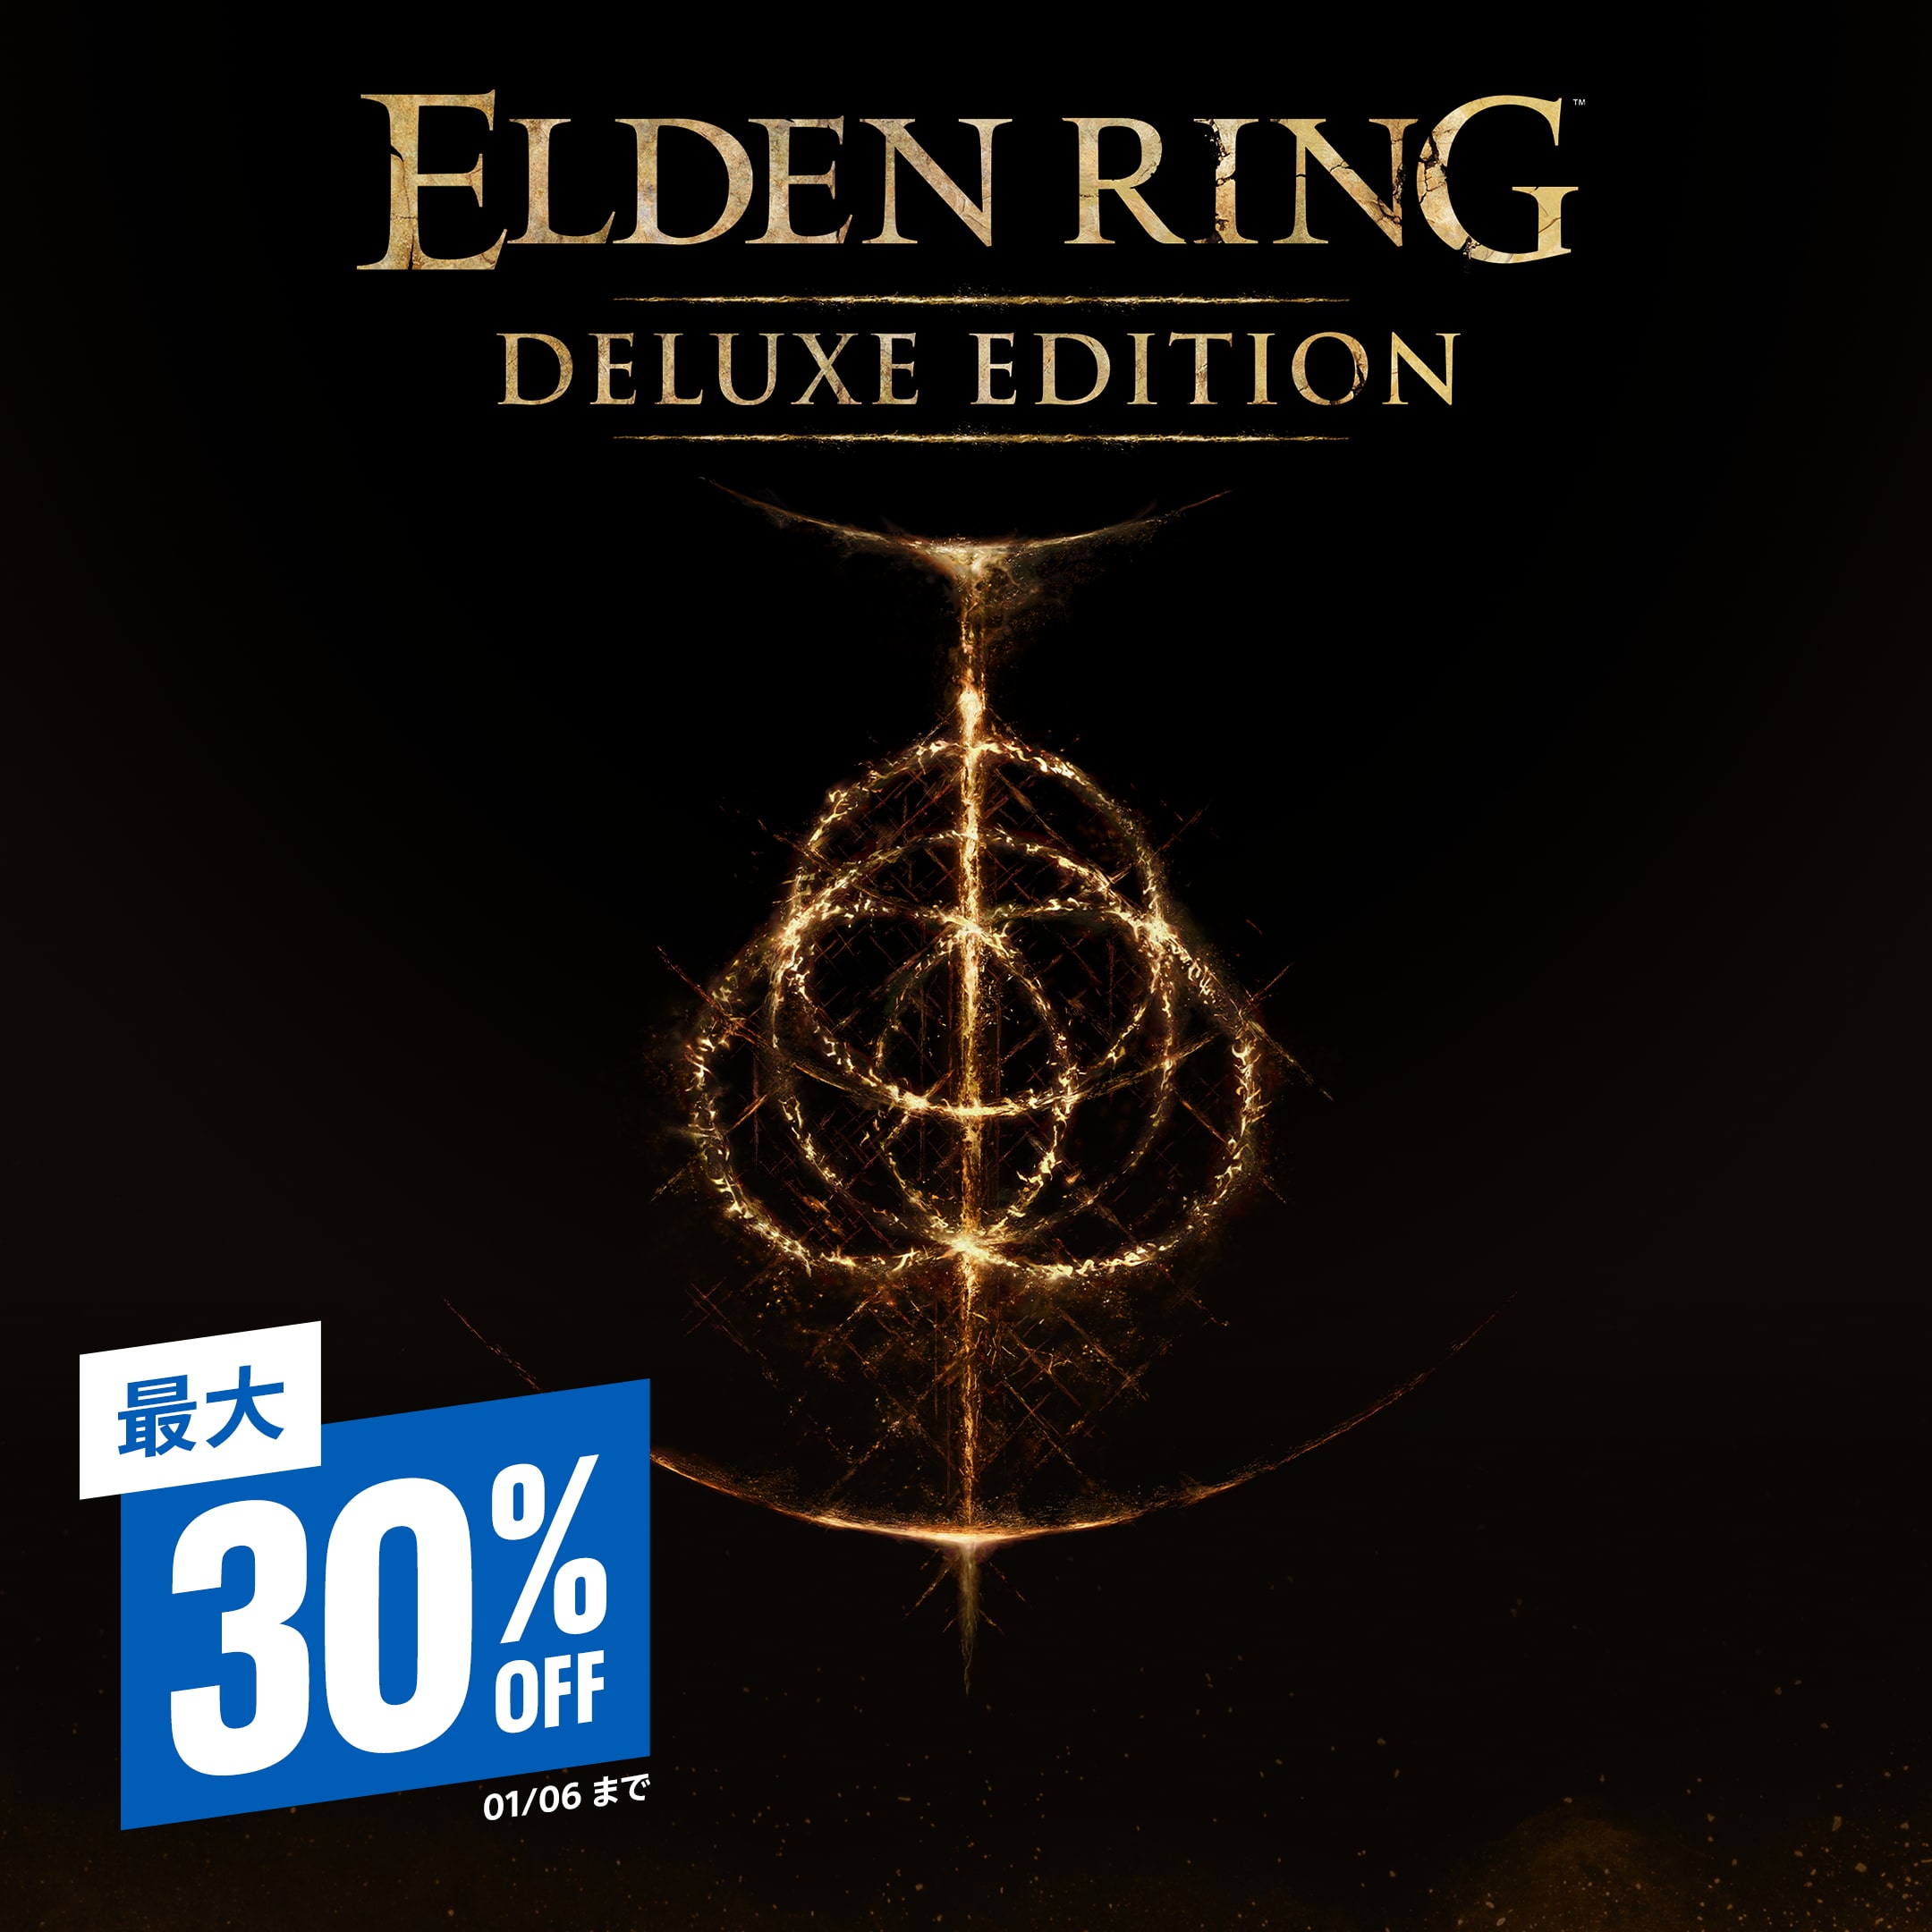 Single Game Offer Elden Ring